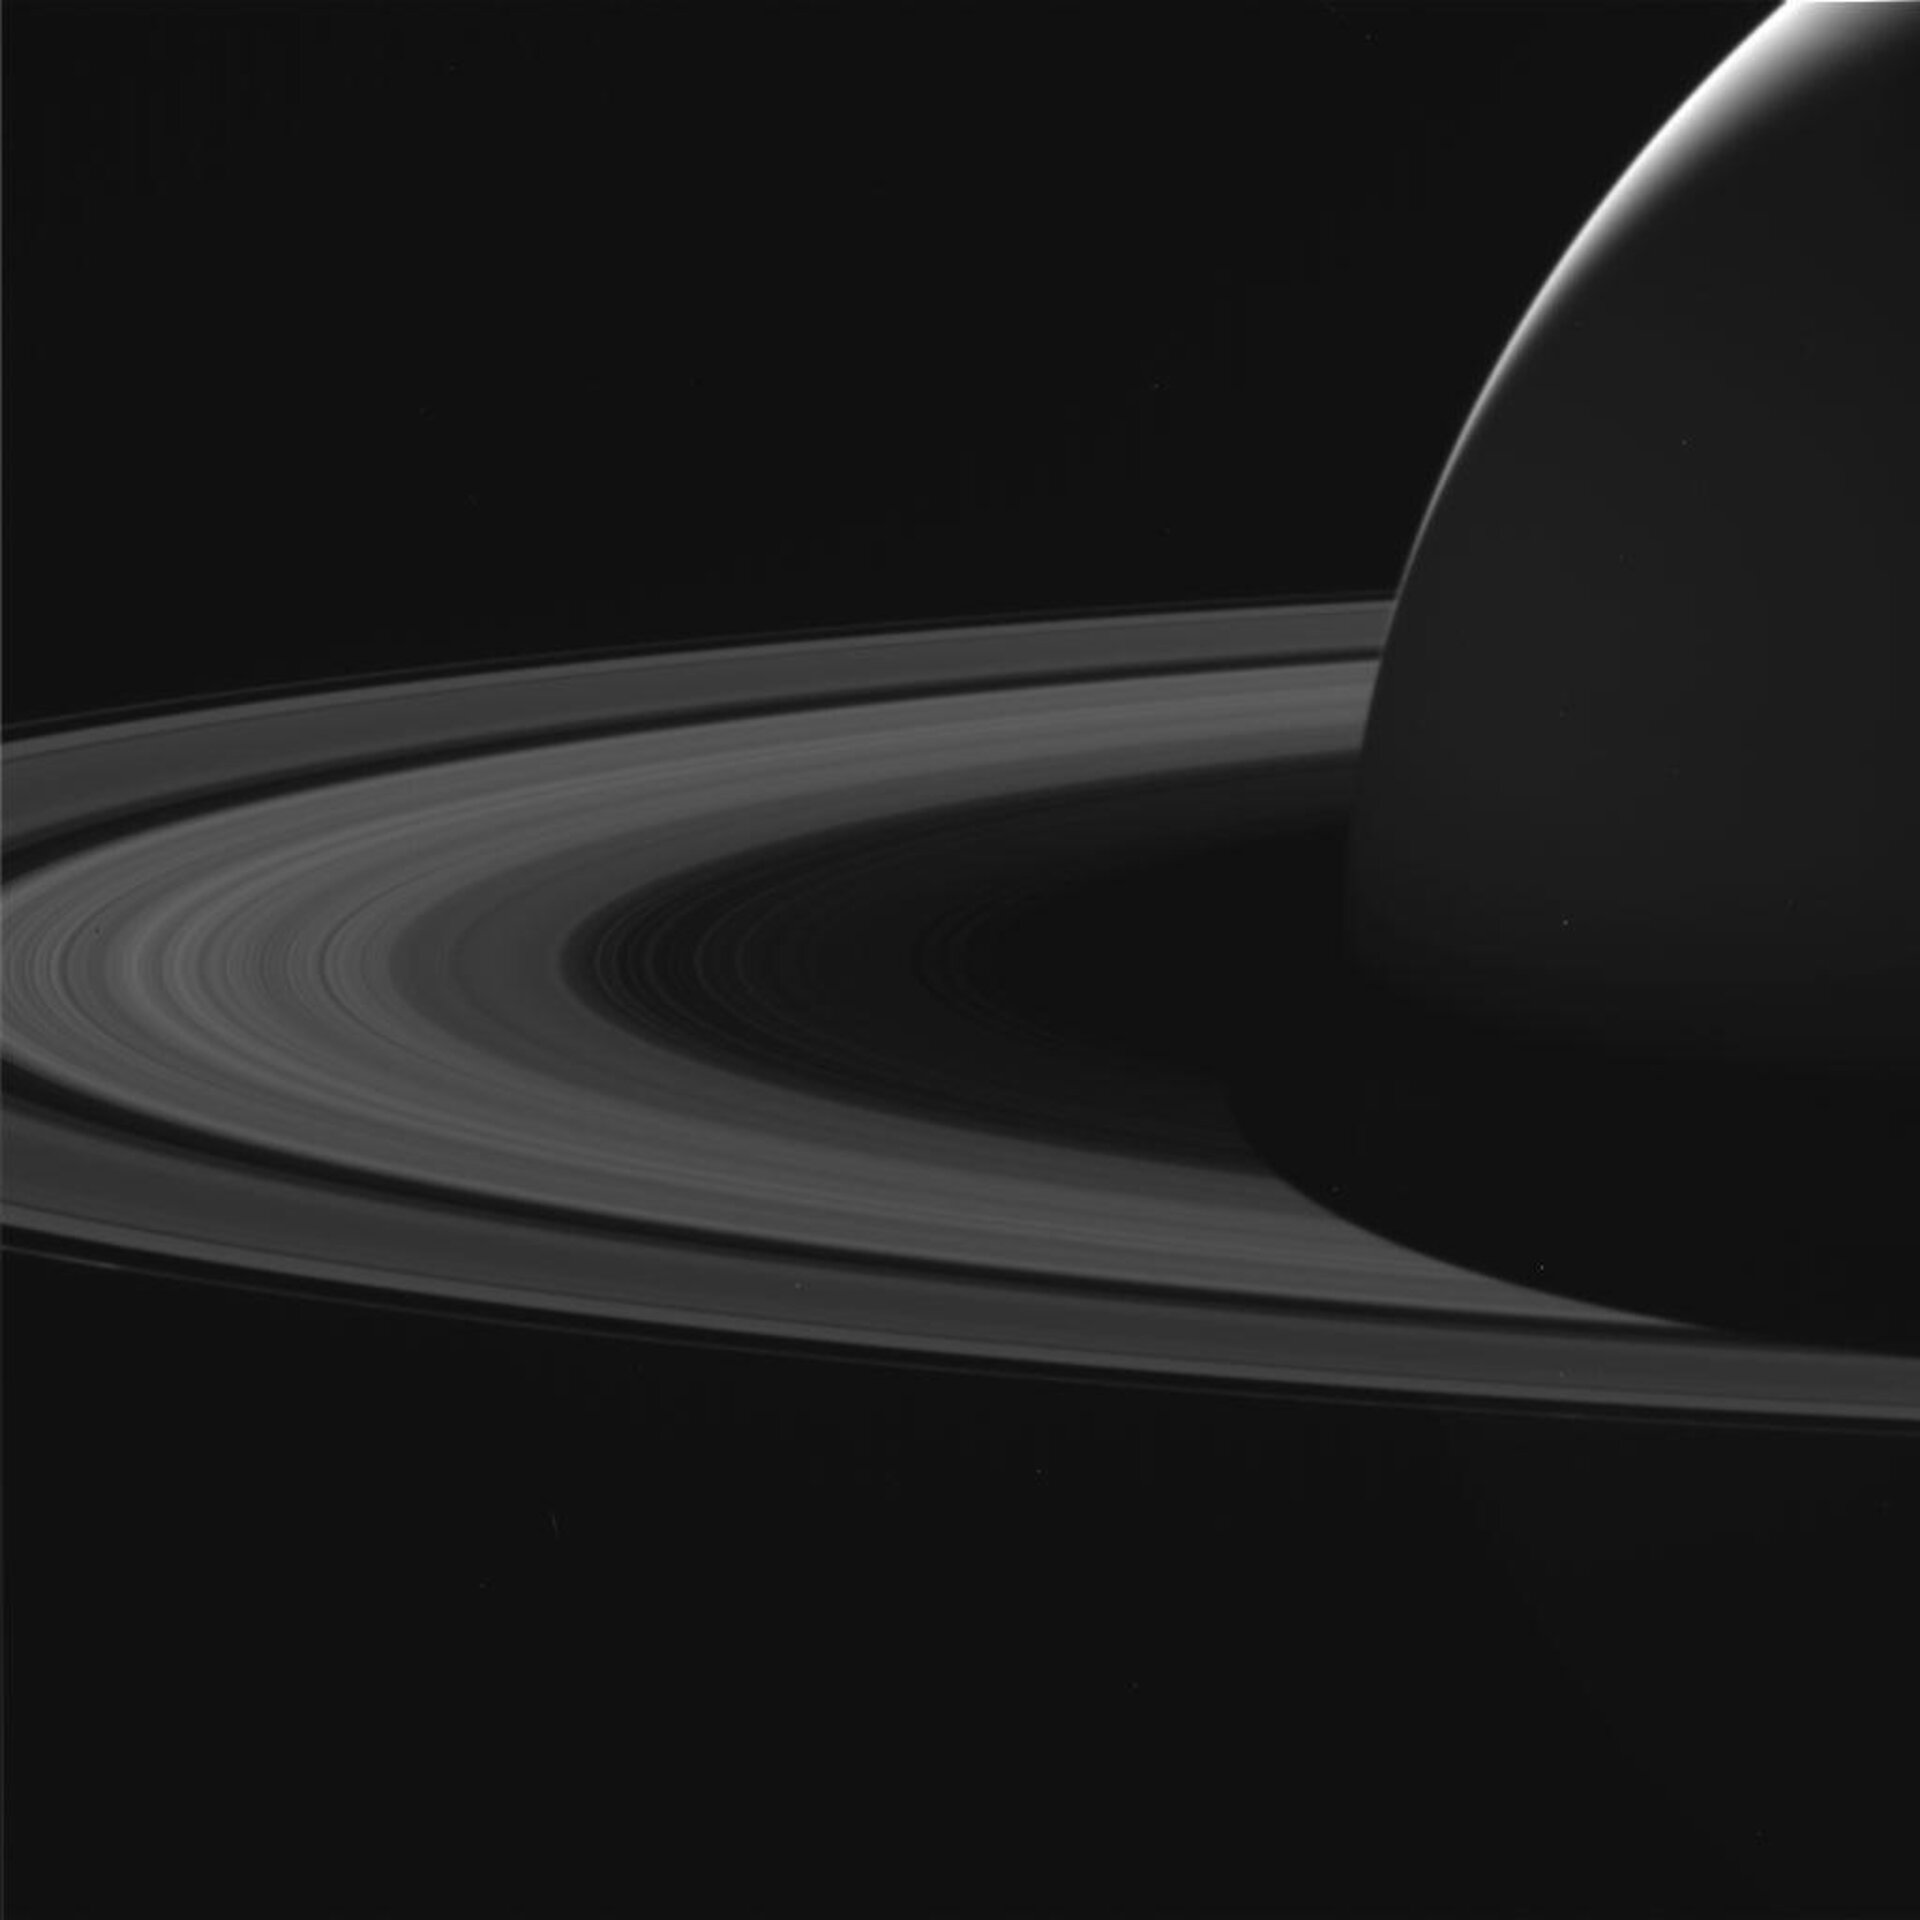 Saturn and rings, 7 June 2017